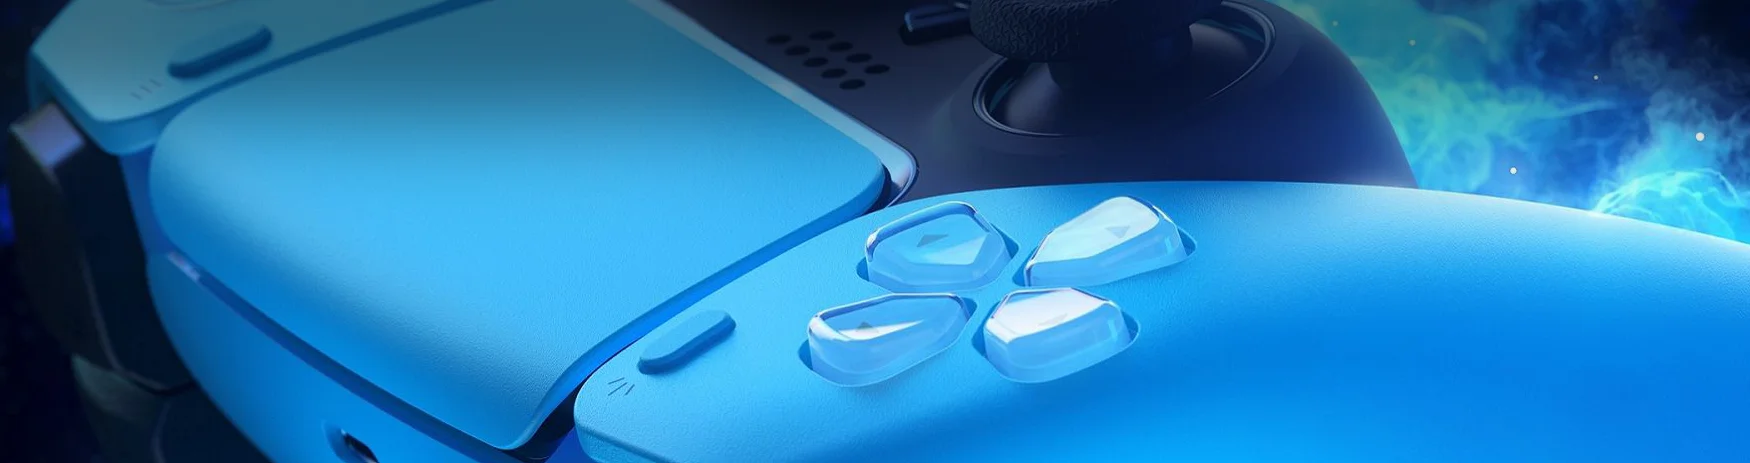 دسته بازی سونی آبی PS5 DualSense